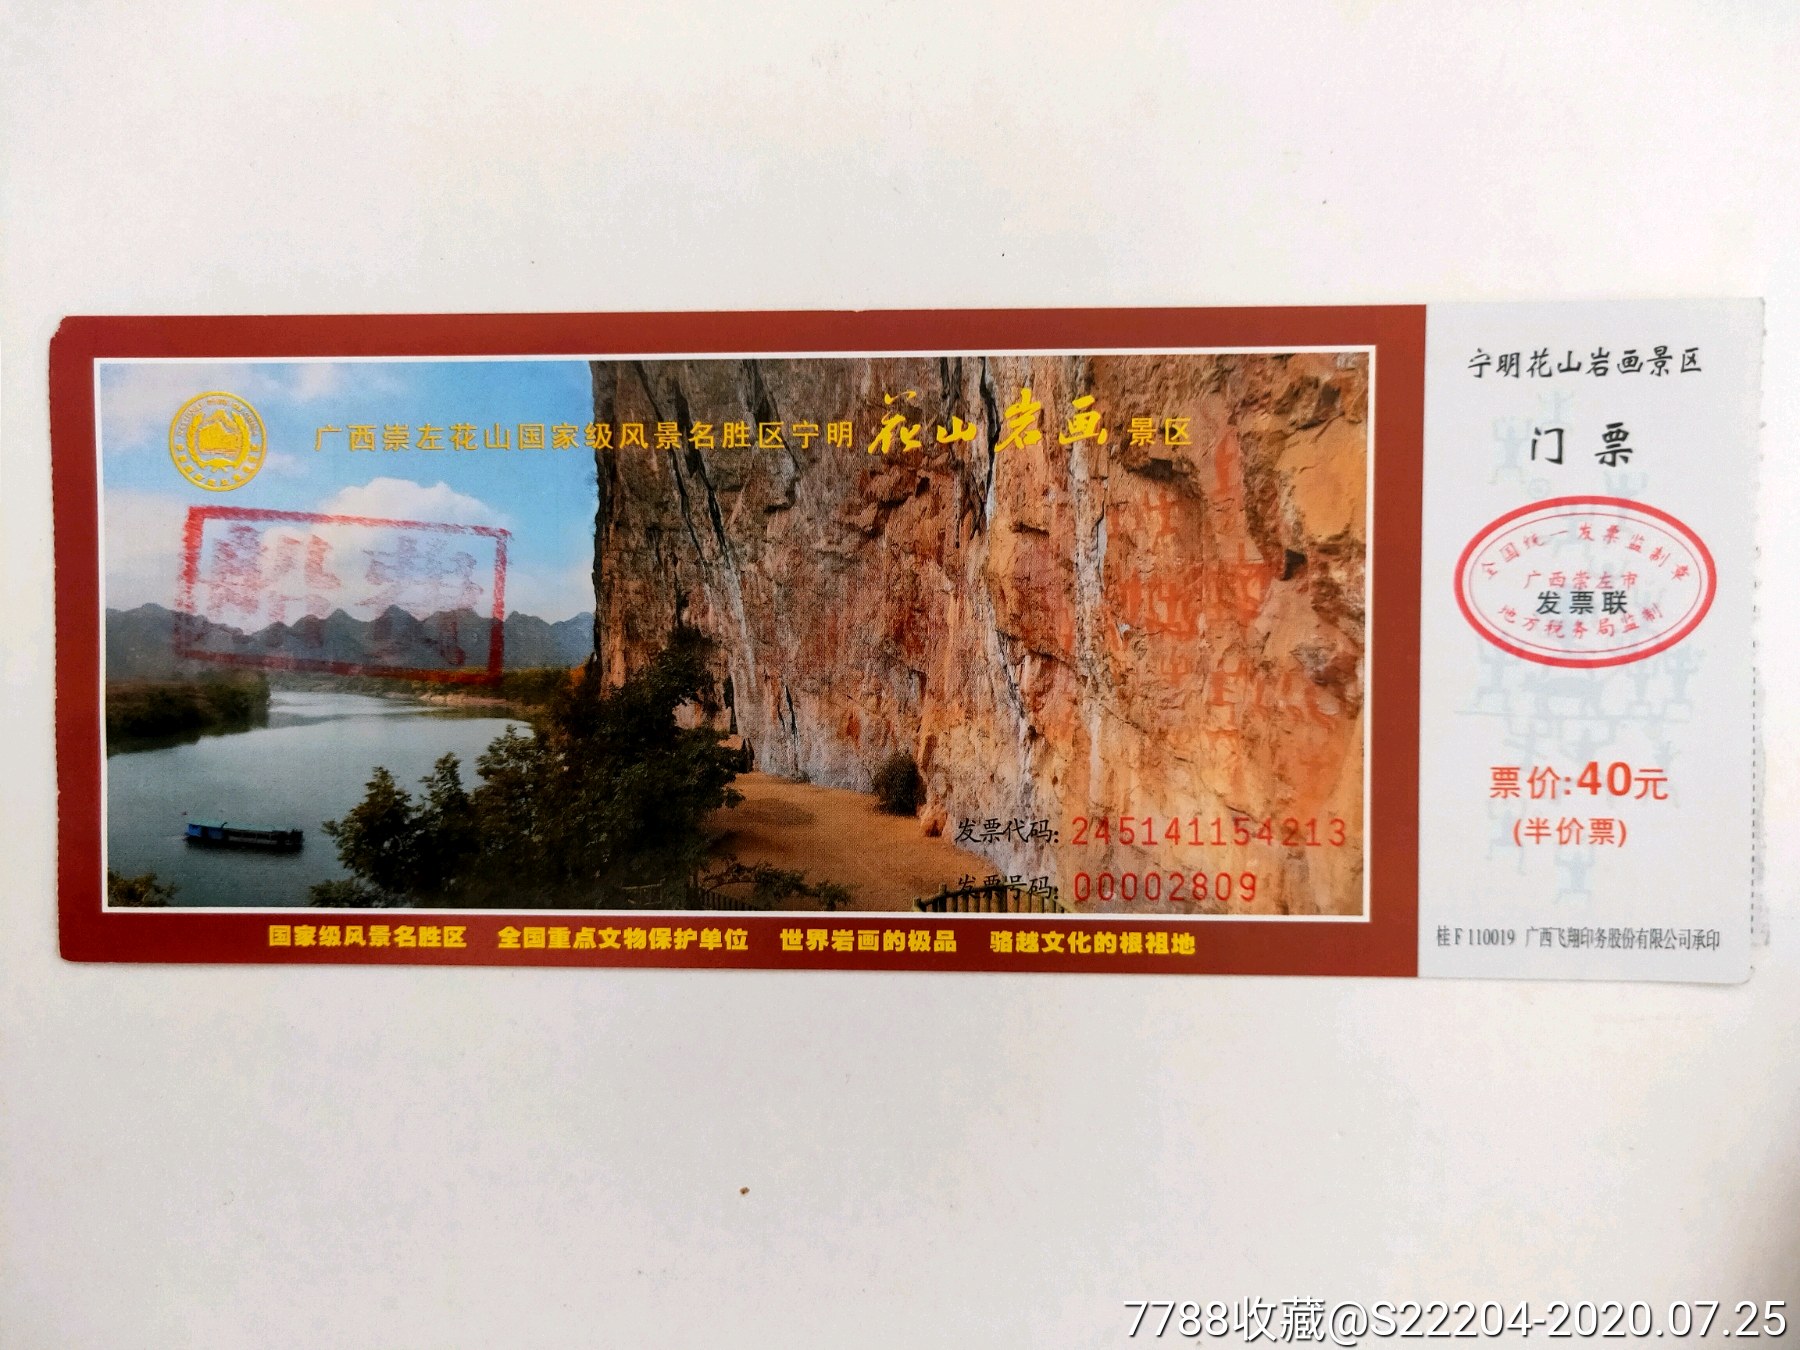 广西宁明花山风景区门票(40元)